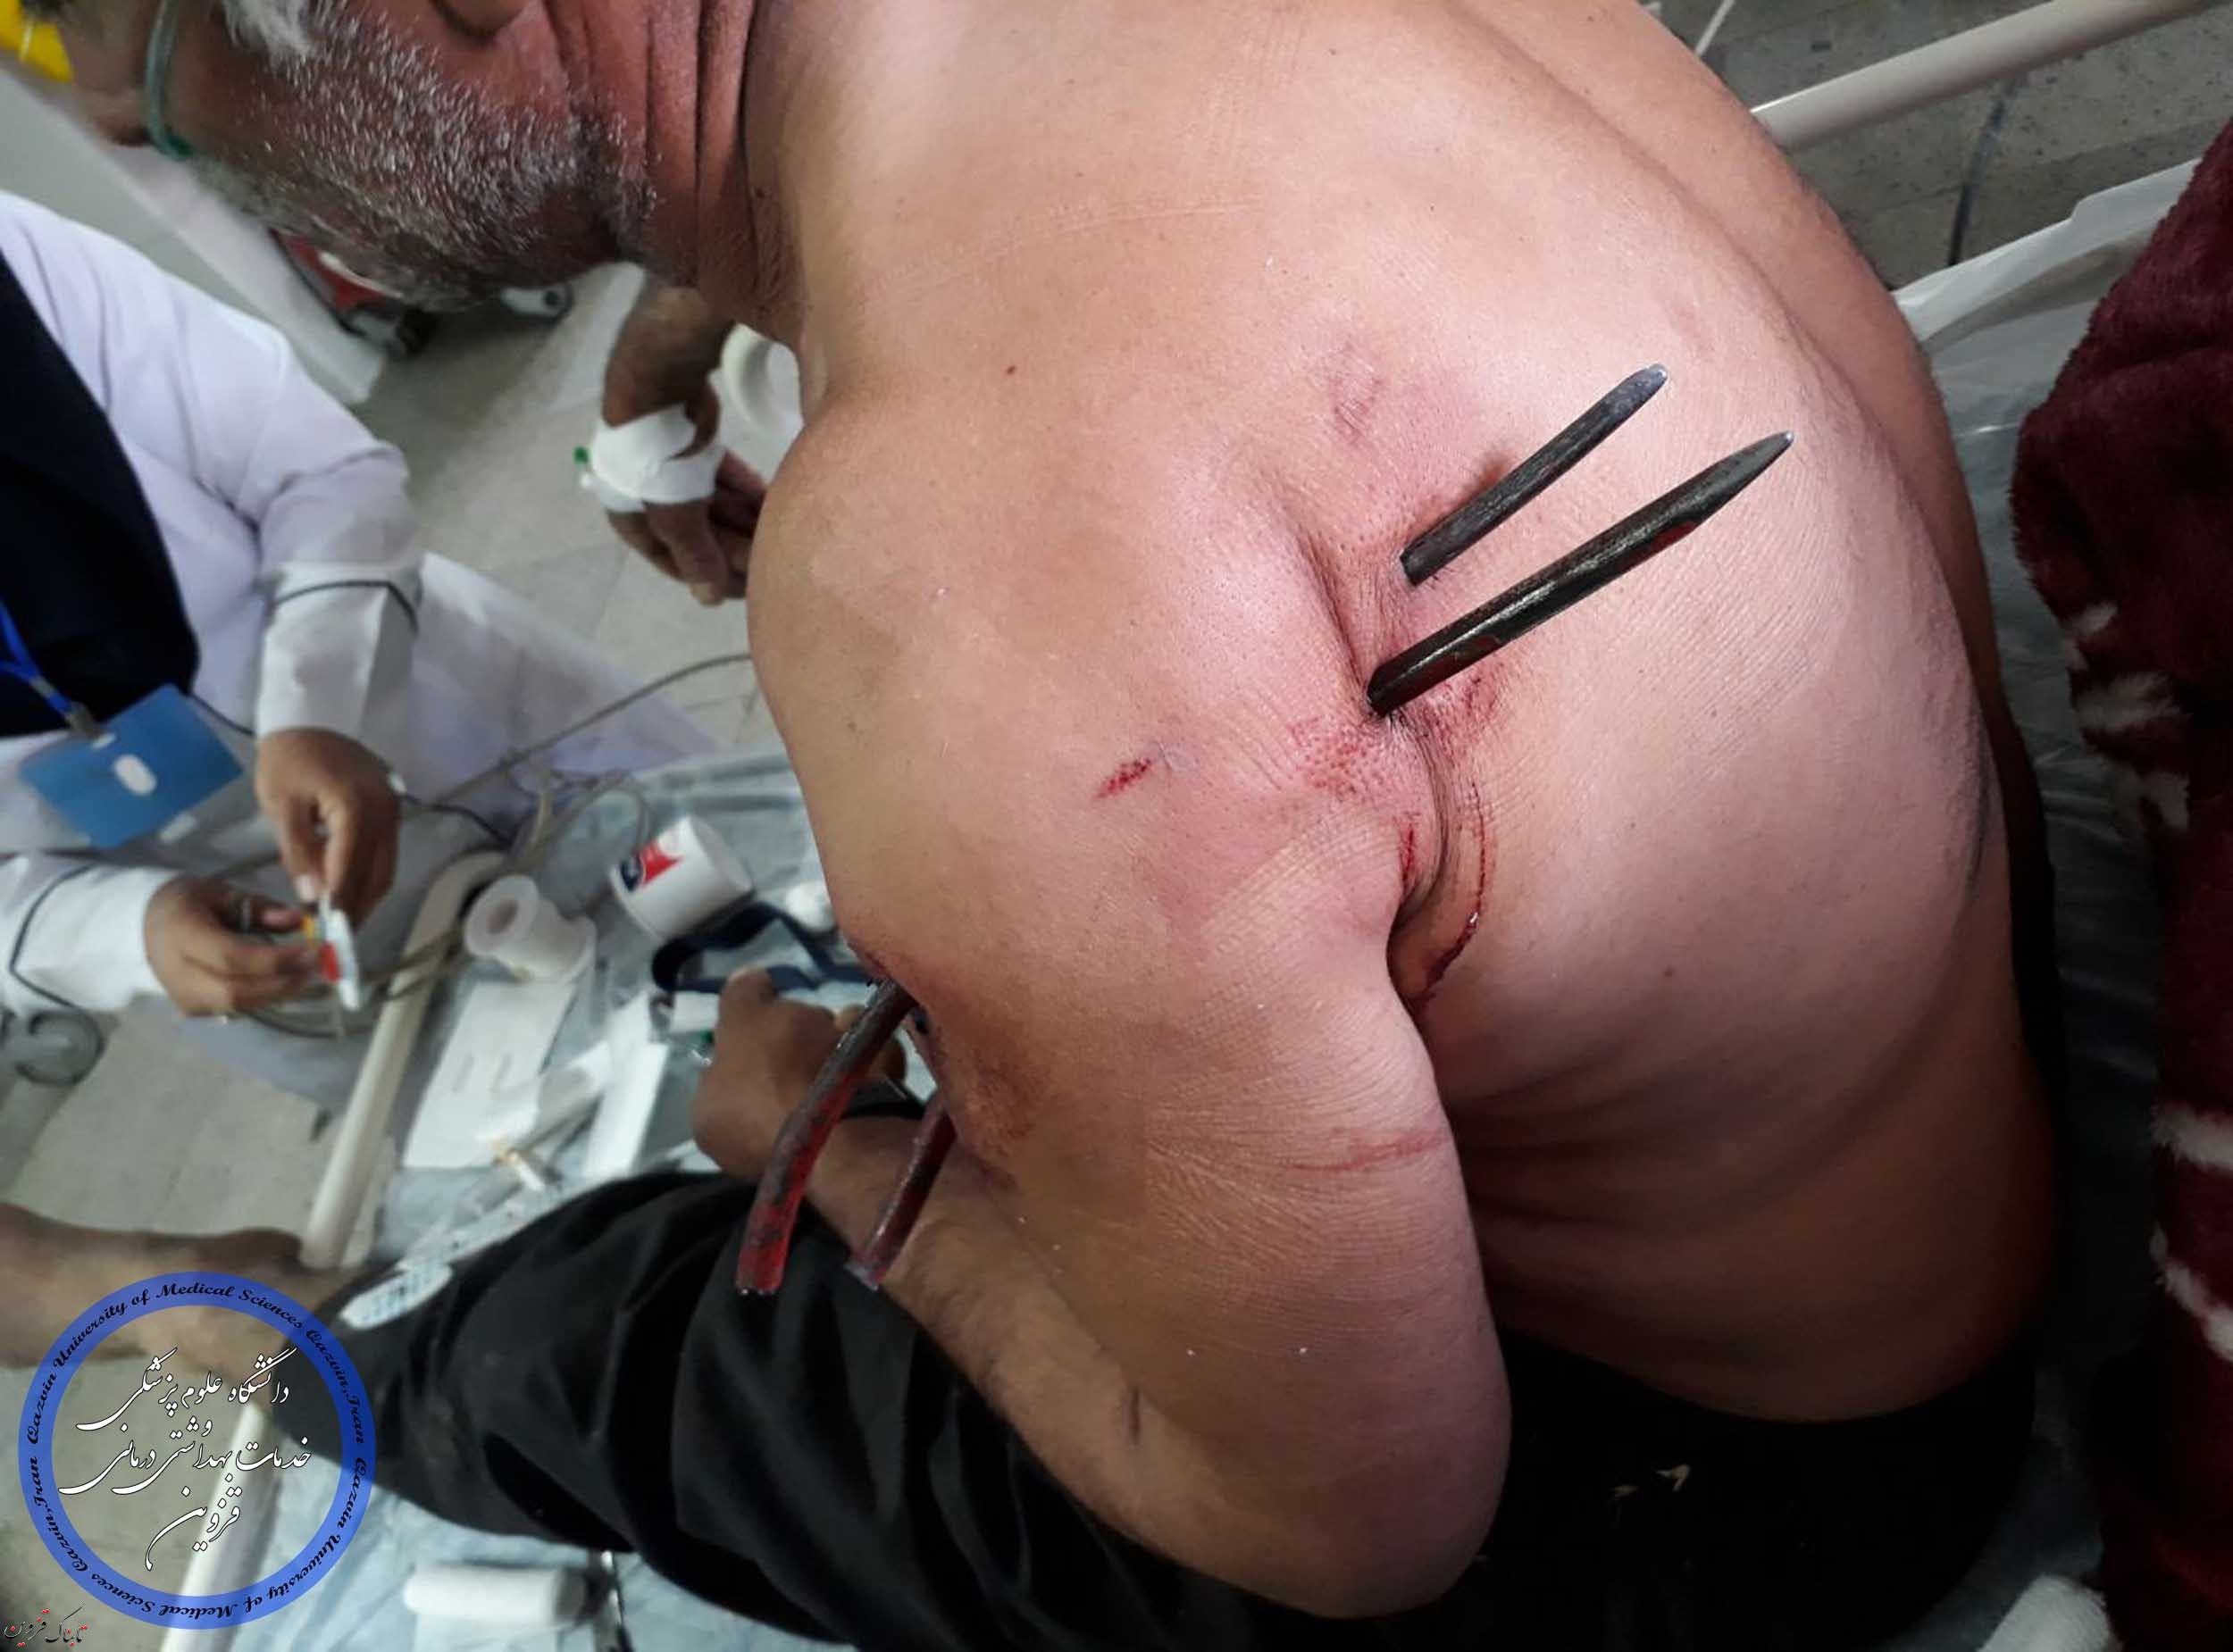 بیرون آوردن چنگک کشاورزی از بدن مرد 60 ساله در بیمارستان «شفا» تاکستان